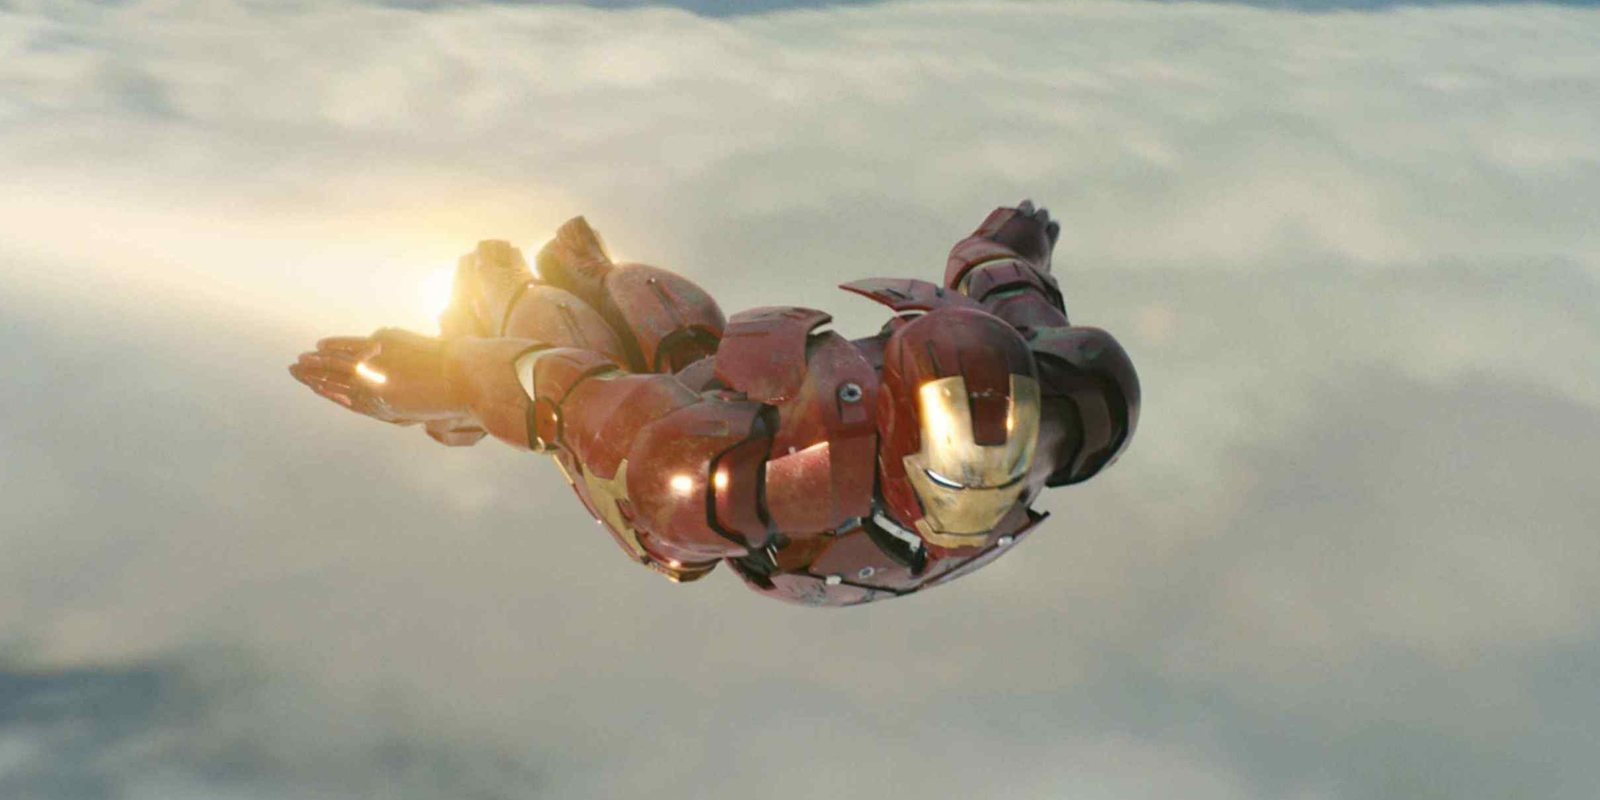 Una escena alternativa de 'Iron Man' hablaba de mutantes y picaduras de araña